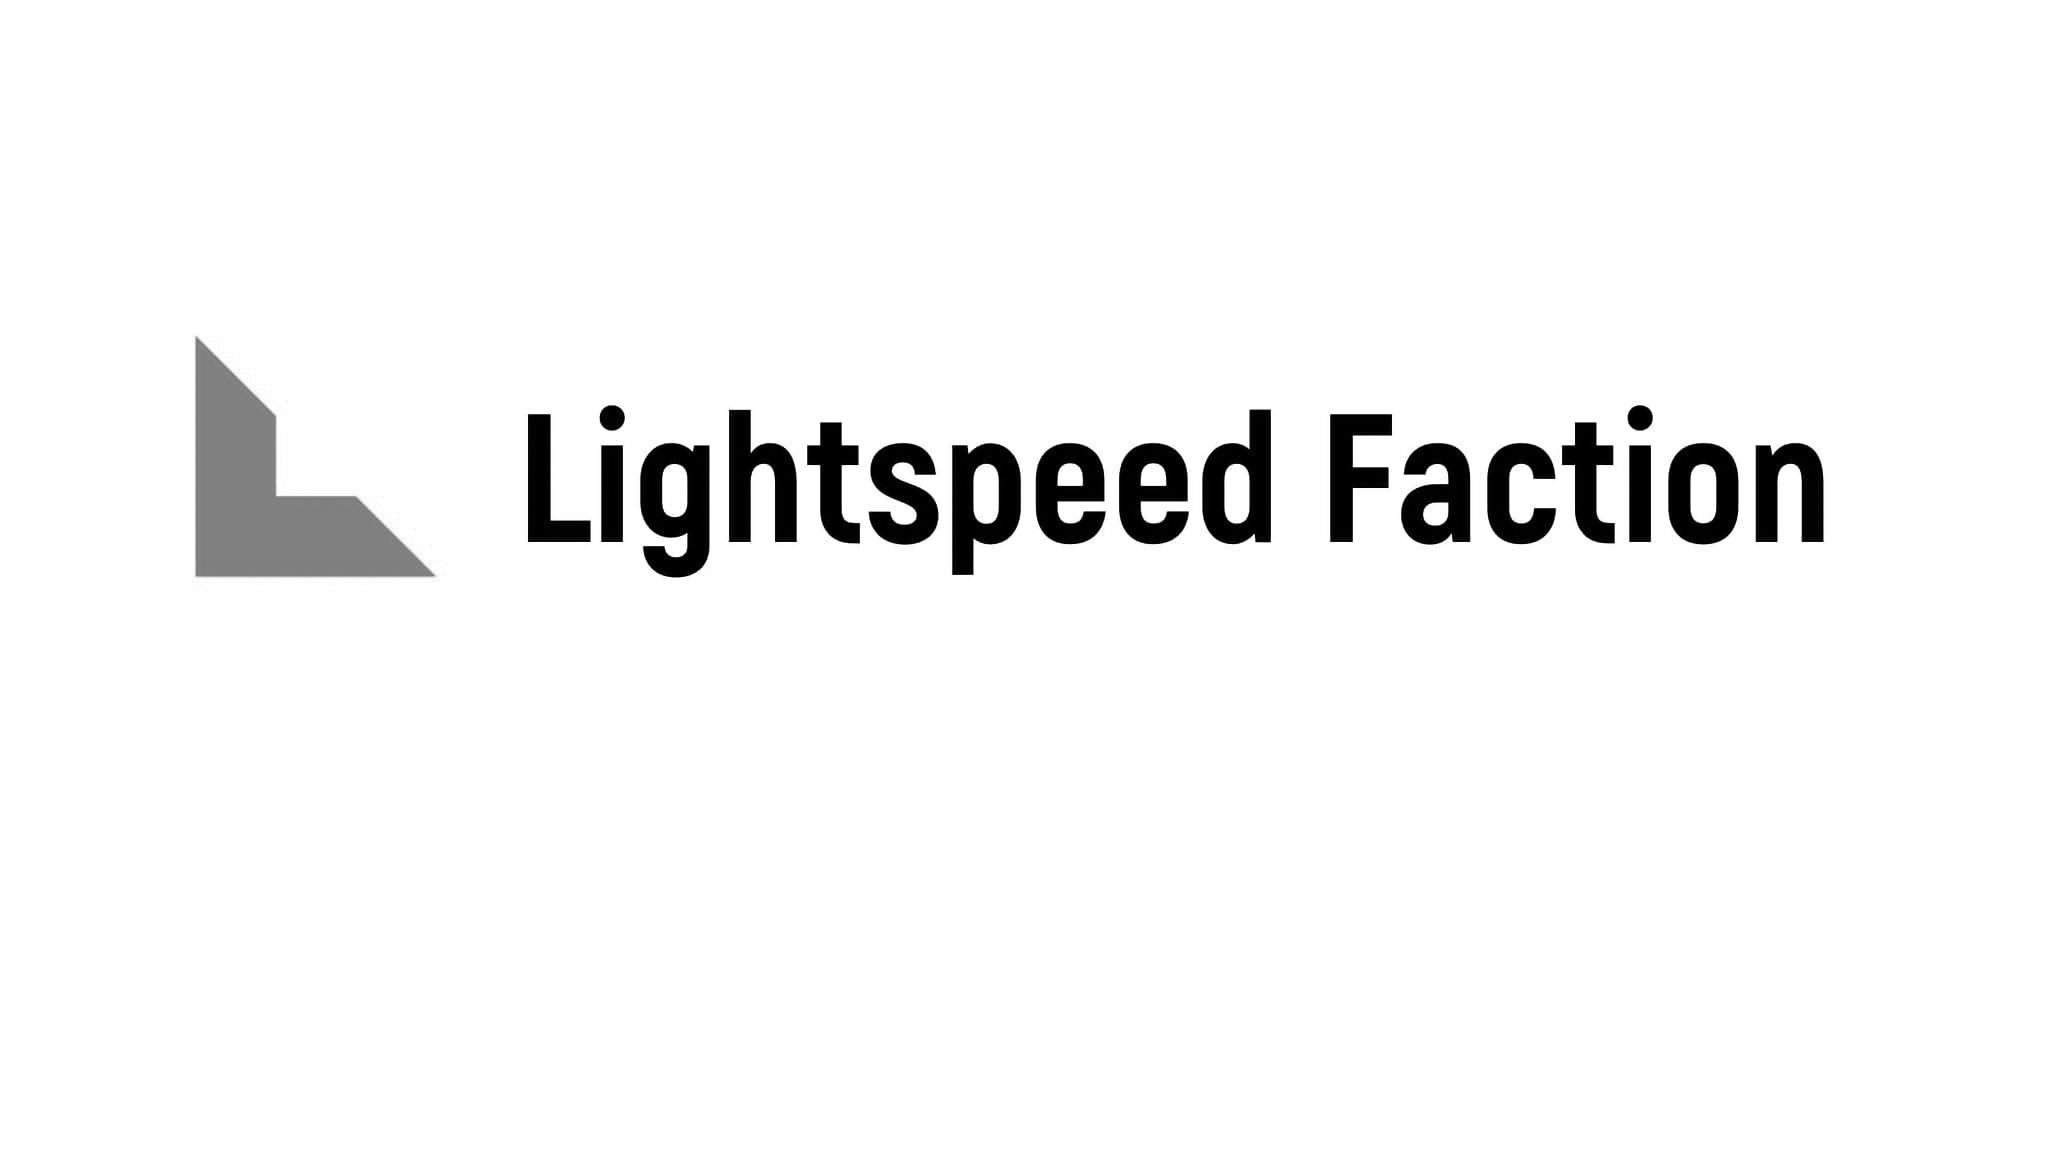  LIGHTSPEED FACTION